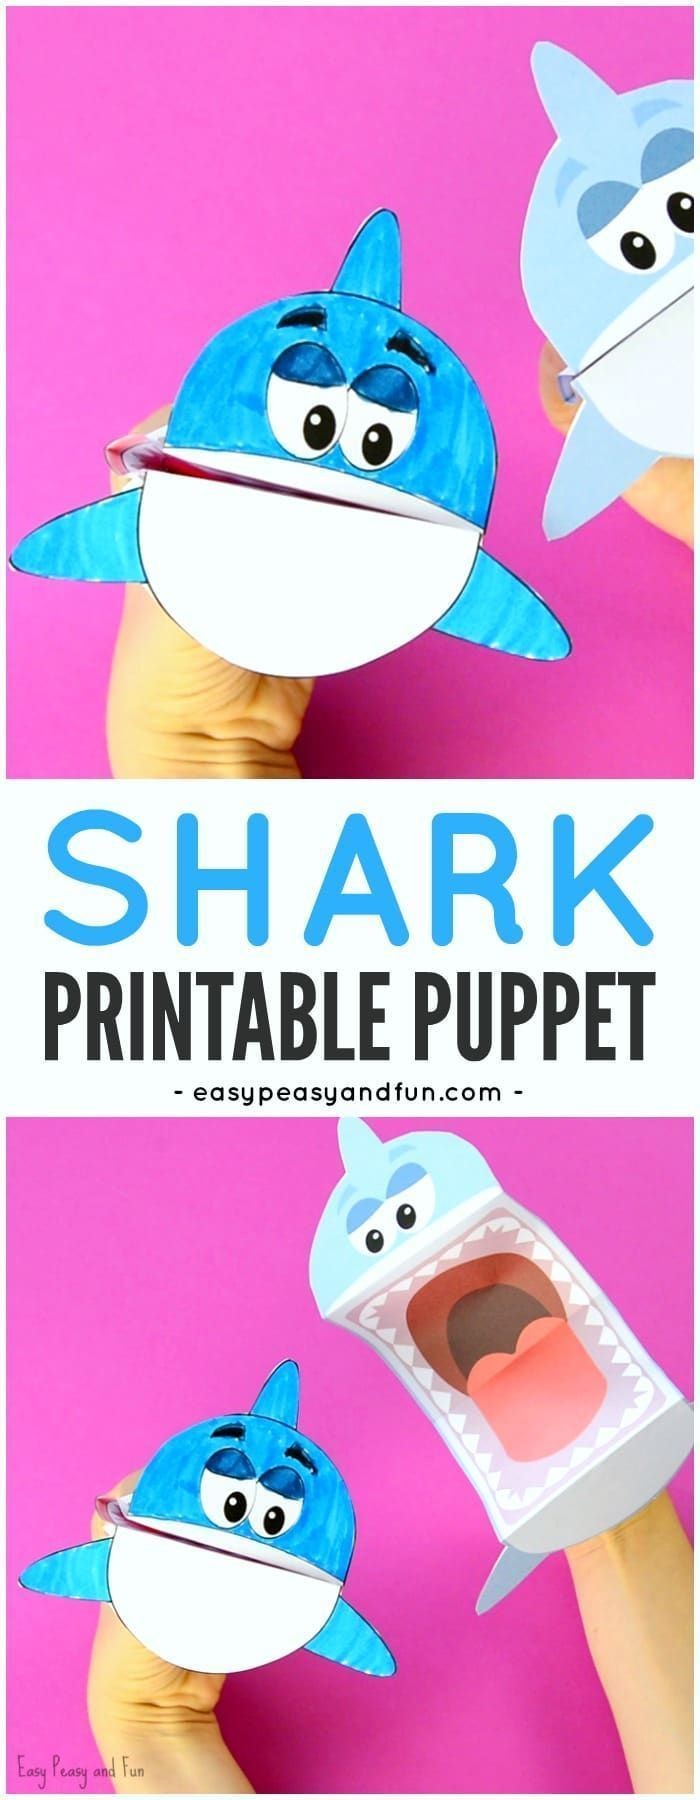 Kids Papercraft Printable Shark Puppet Art Kids Diys Pinterest